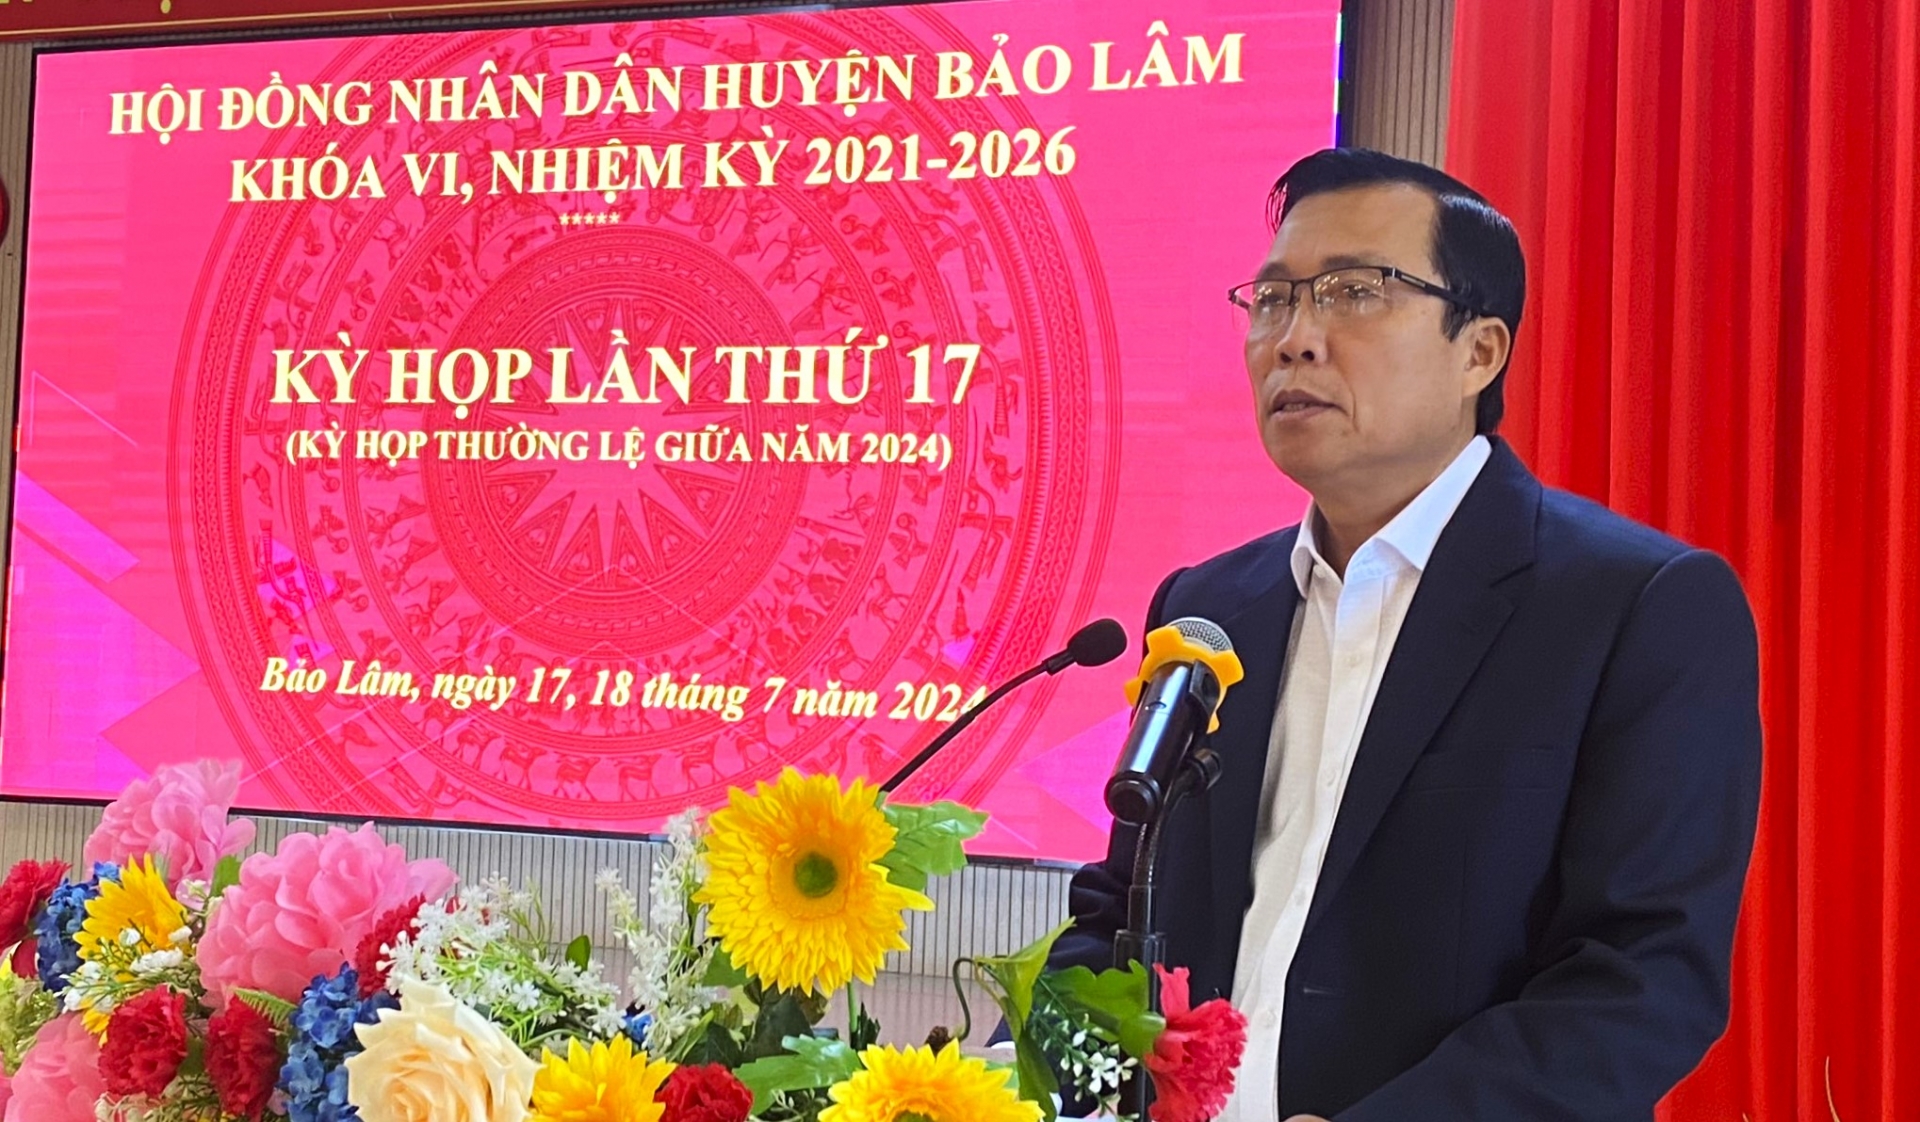 Đồng chí Trịnh Văn Thảo - Phó Chủ tịch UBND huyện báo cáo kết quả phát triển kinh tế - xã hội 6 tháng đầu năm tại Kỳ họp